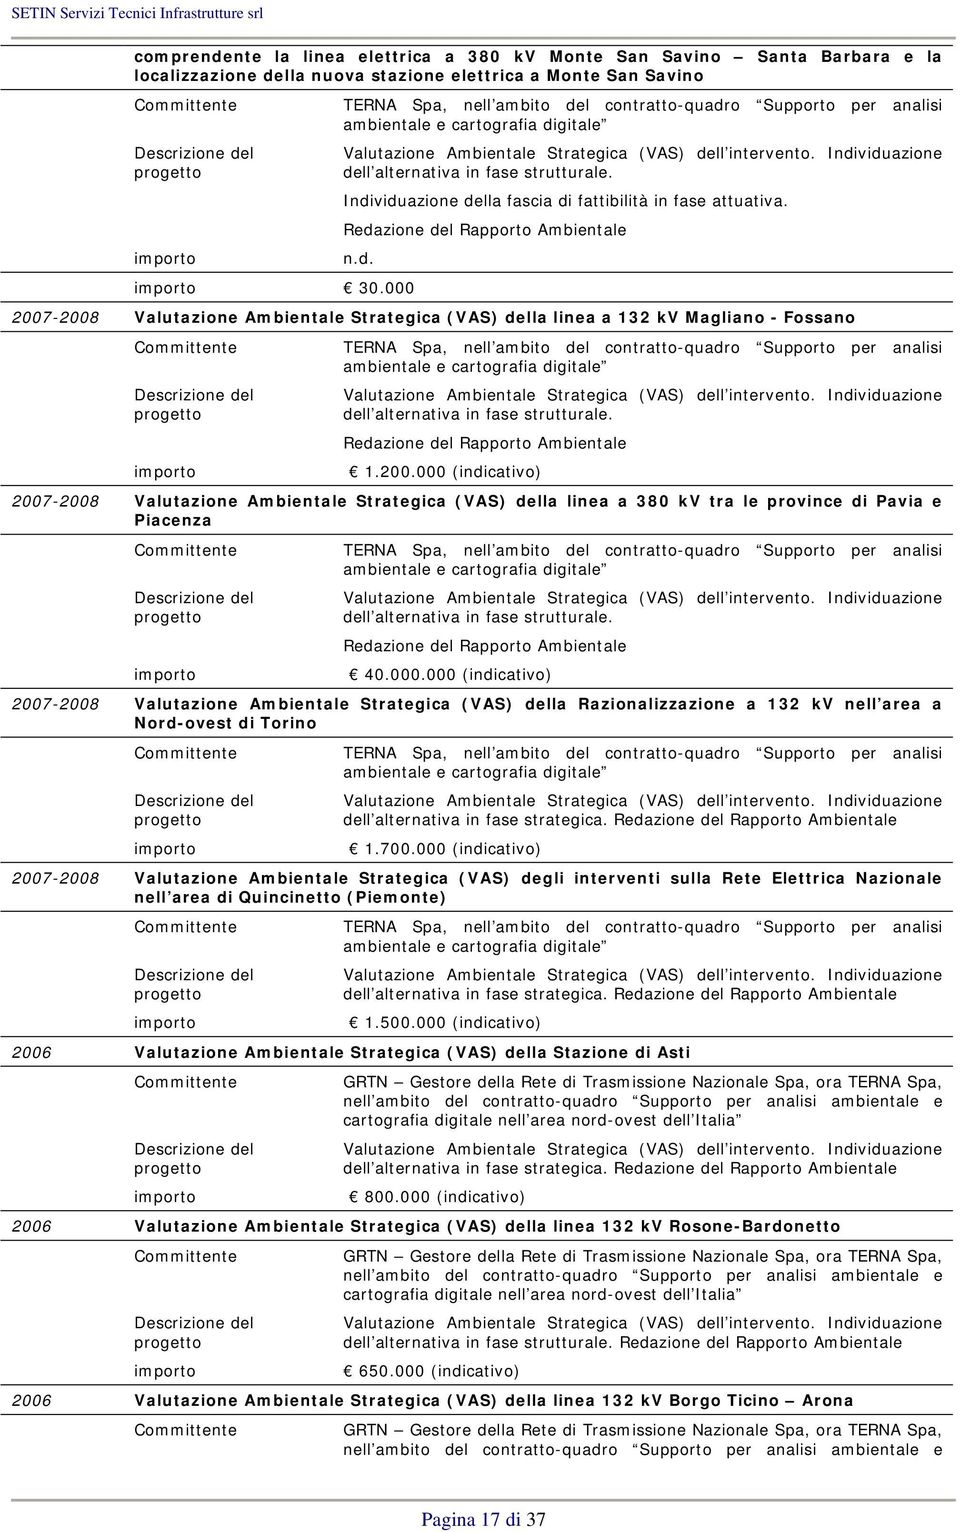 000 2007-2008 Valutazione Ambientale Strategica (VAS) della linea a 132 kv Magliano - Fossano TERNA Spa, nell ambito del contratto-quadro Supporto per analisi ambientale e cartografia digitale dell